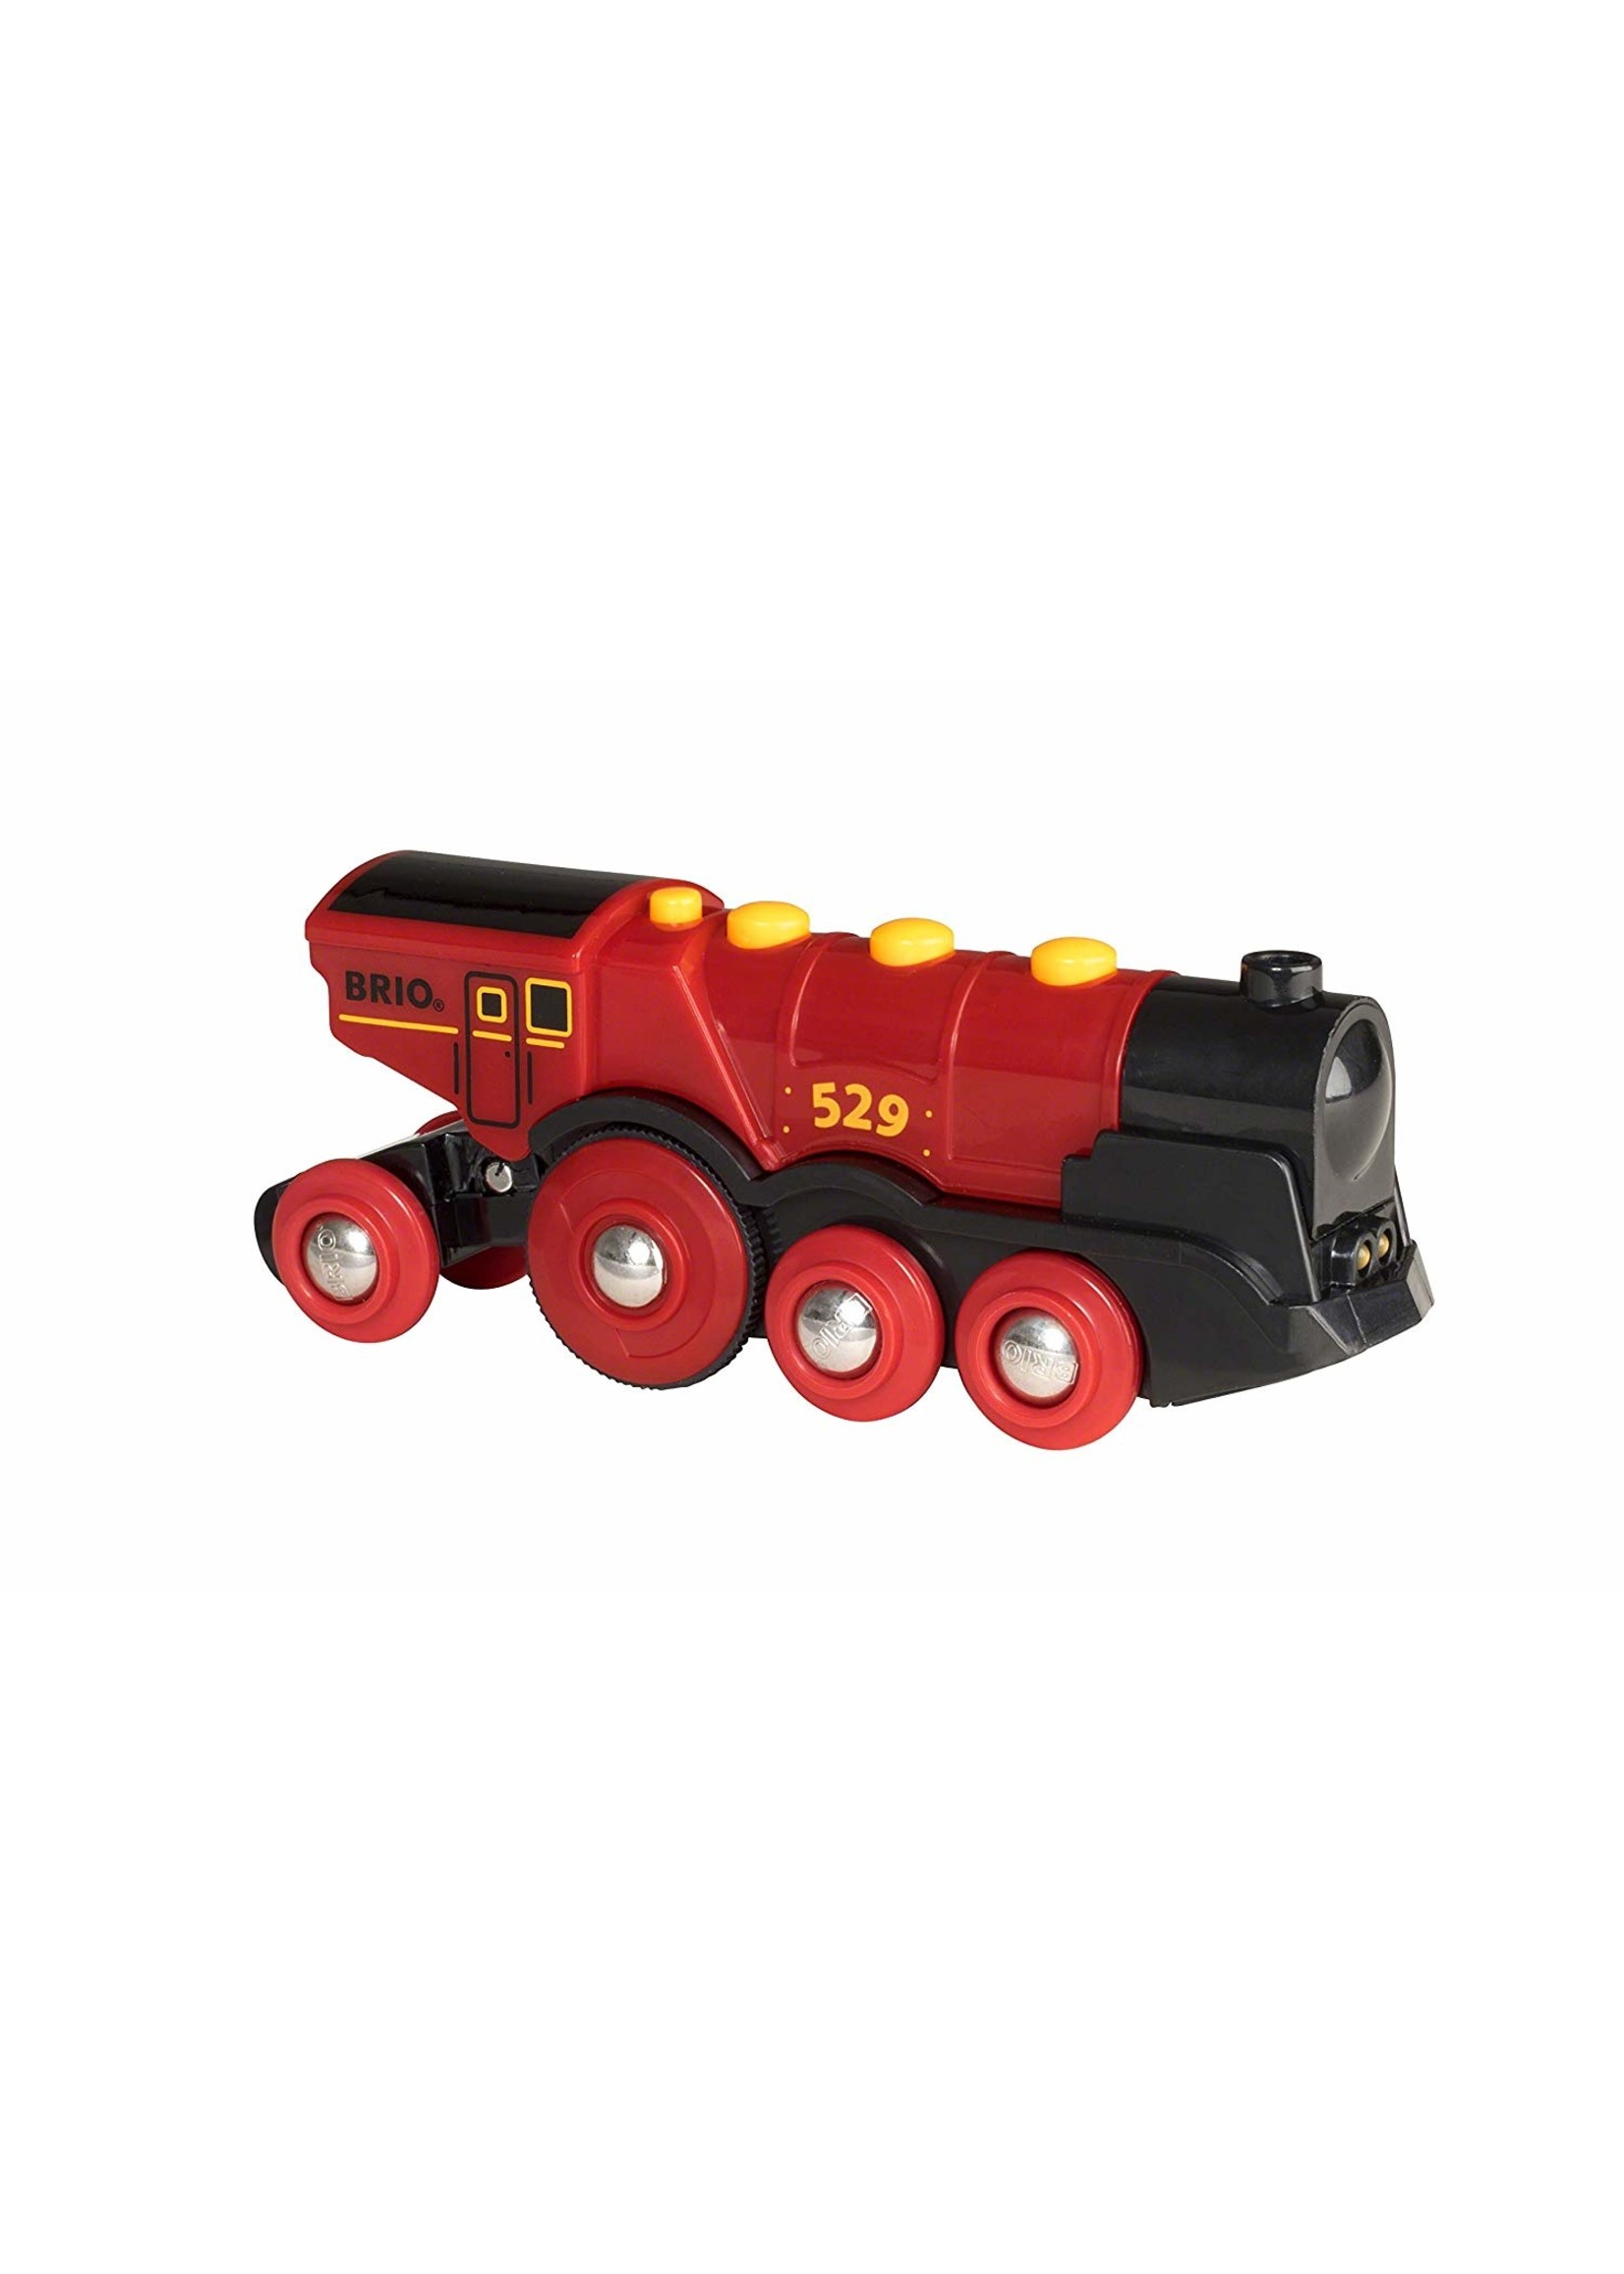 Brio 33592 - Mighty Red Action Locomotive